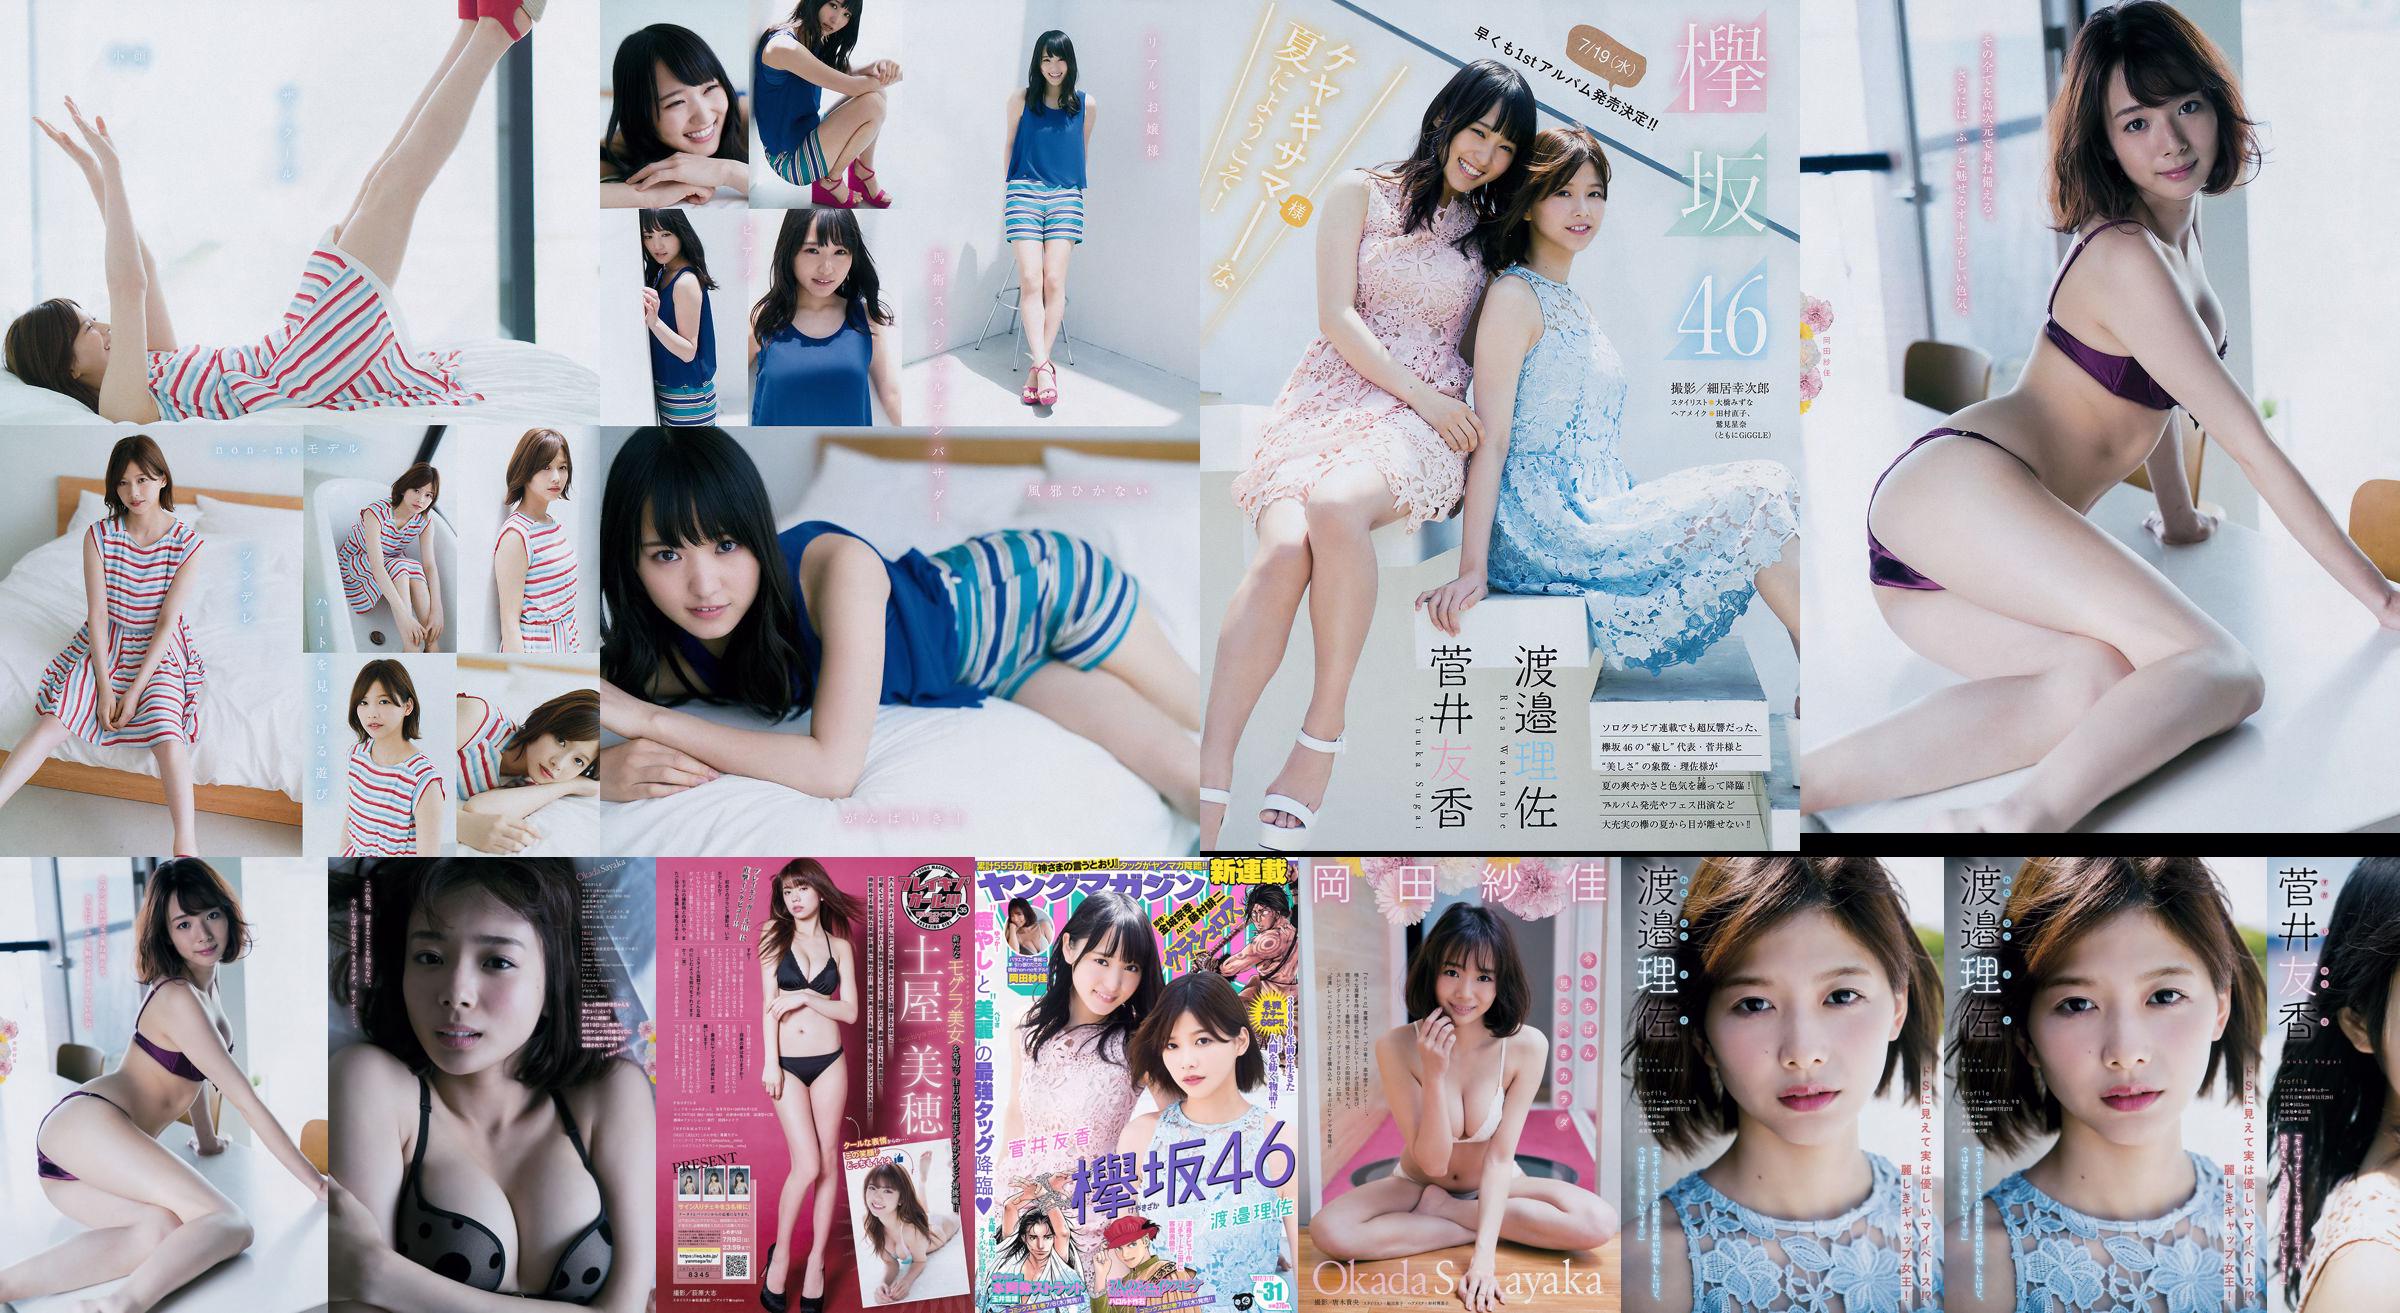 [Young Magazine] Watanabe Risa, Sugai Yuka, Okada Saika 2017 Magazine photo n ° 31 No.c38419 Page 1